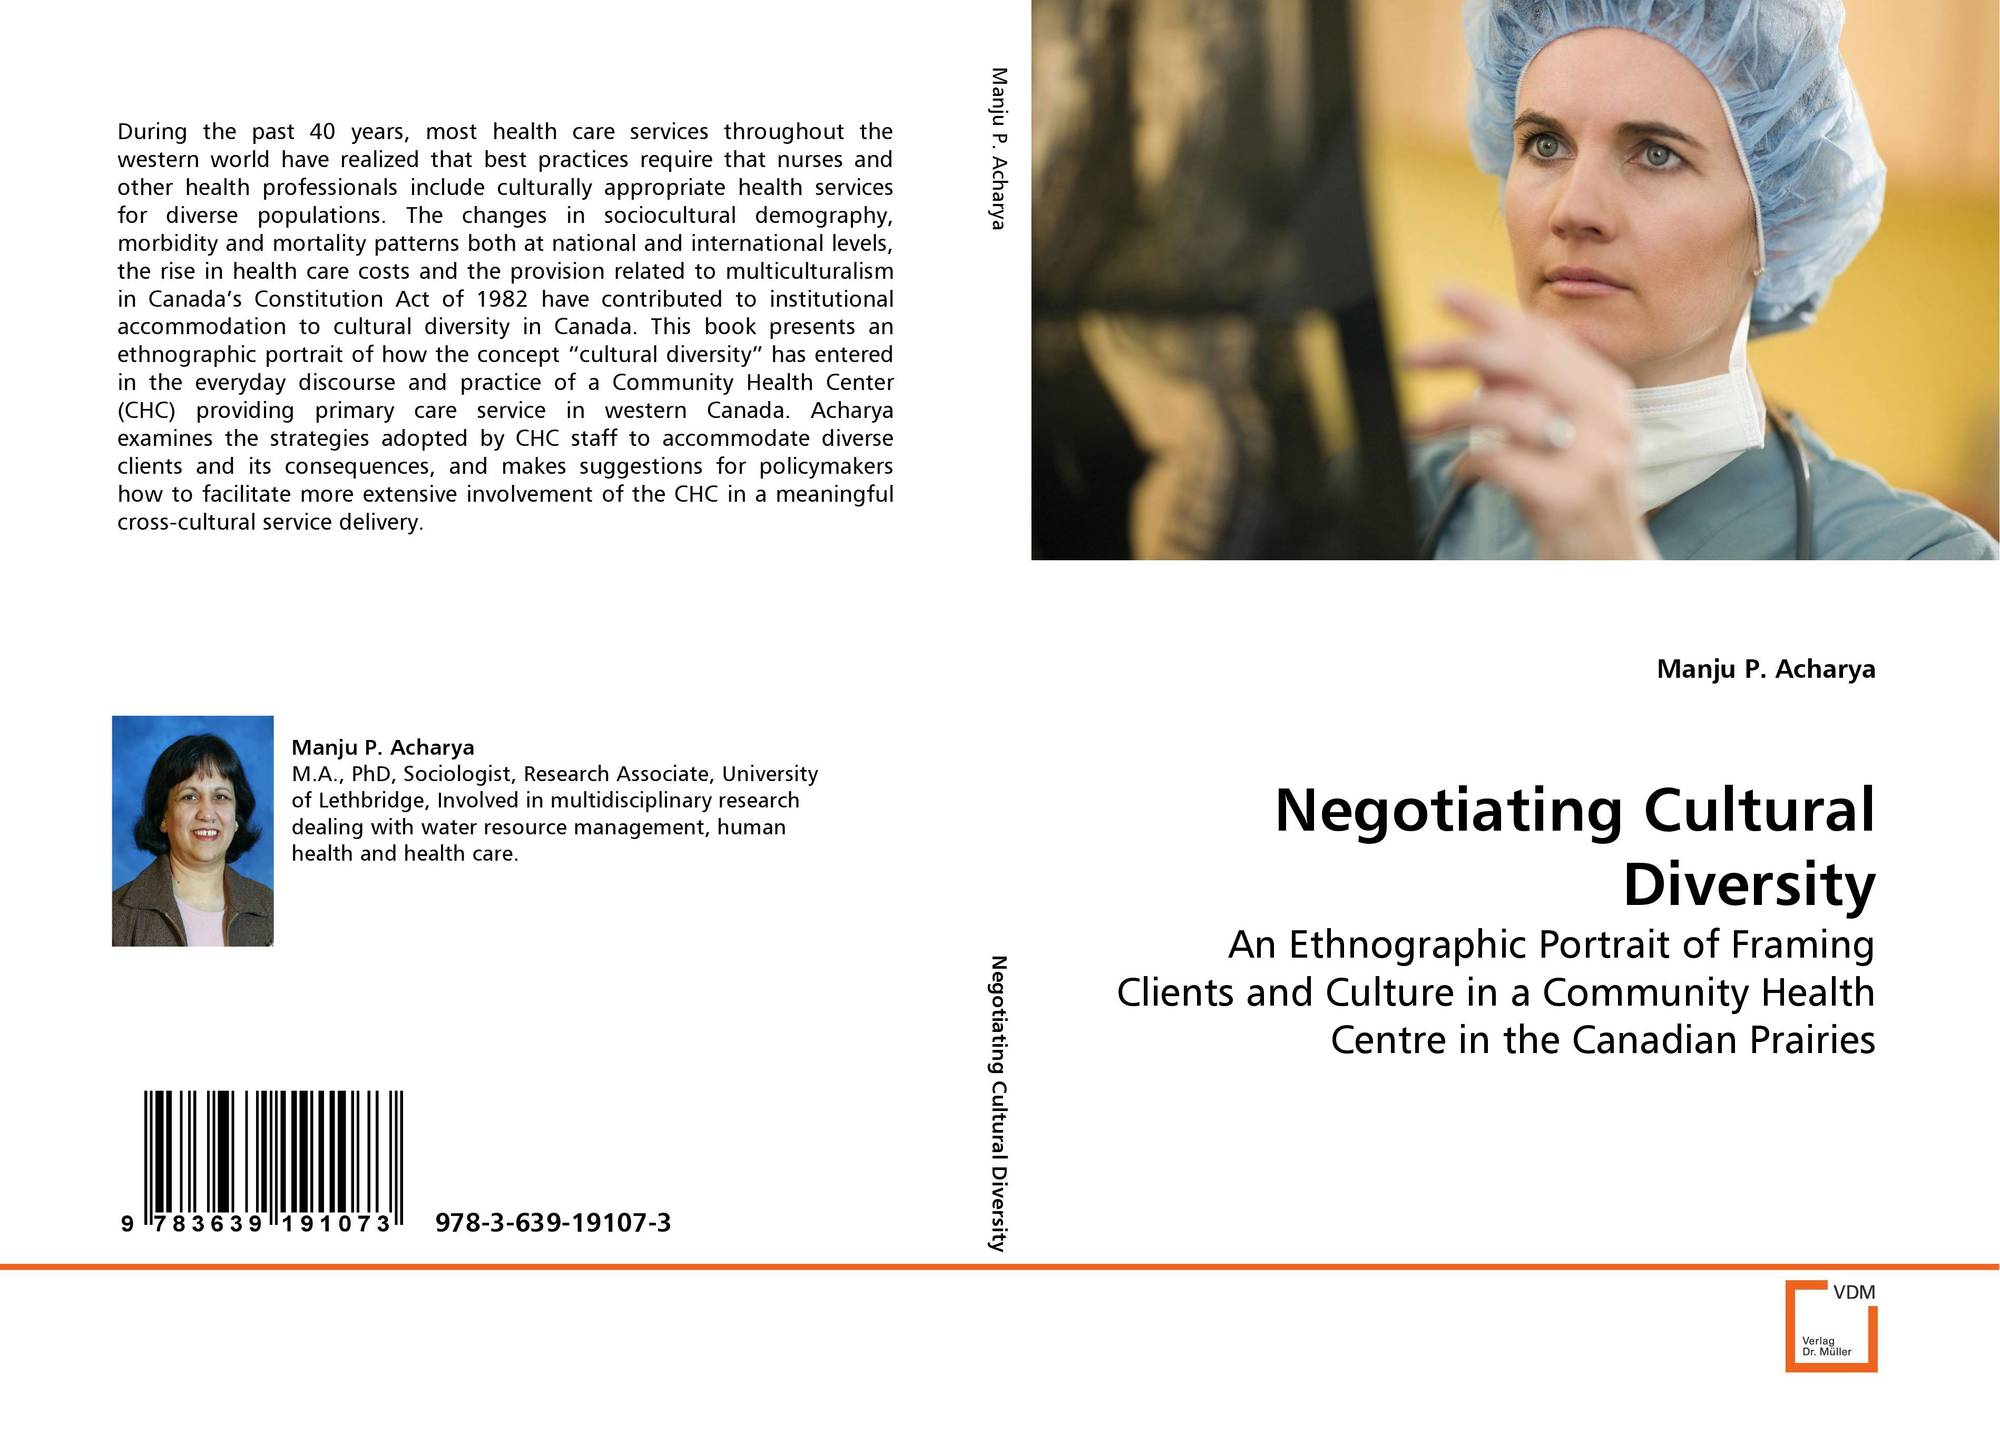 Negotiating Cultural Diversity, 978-3-639-19107-3, 3639191072